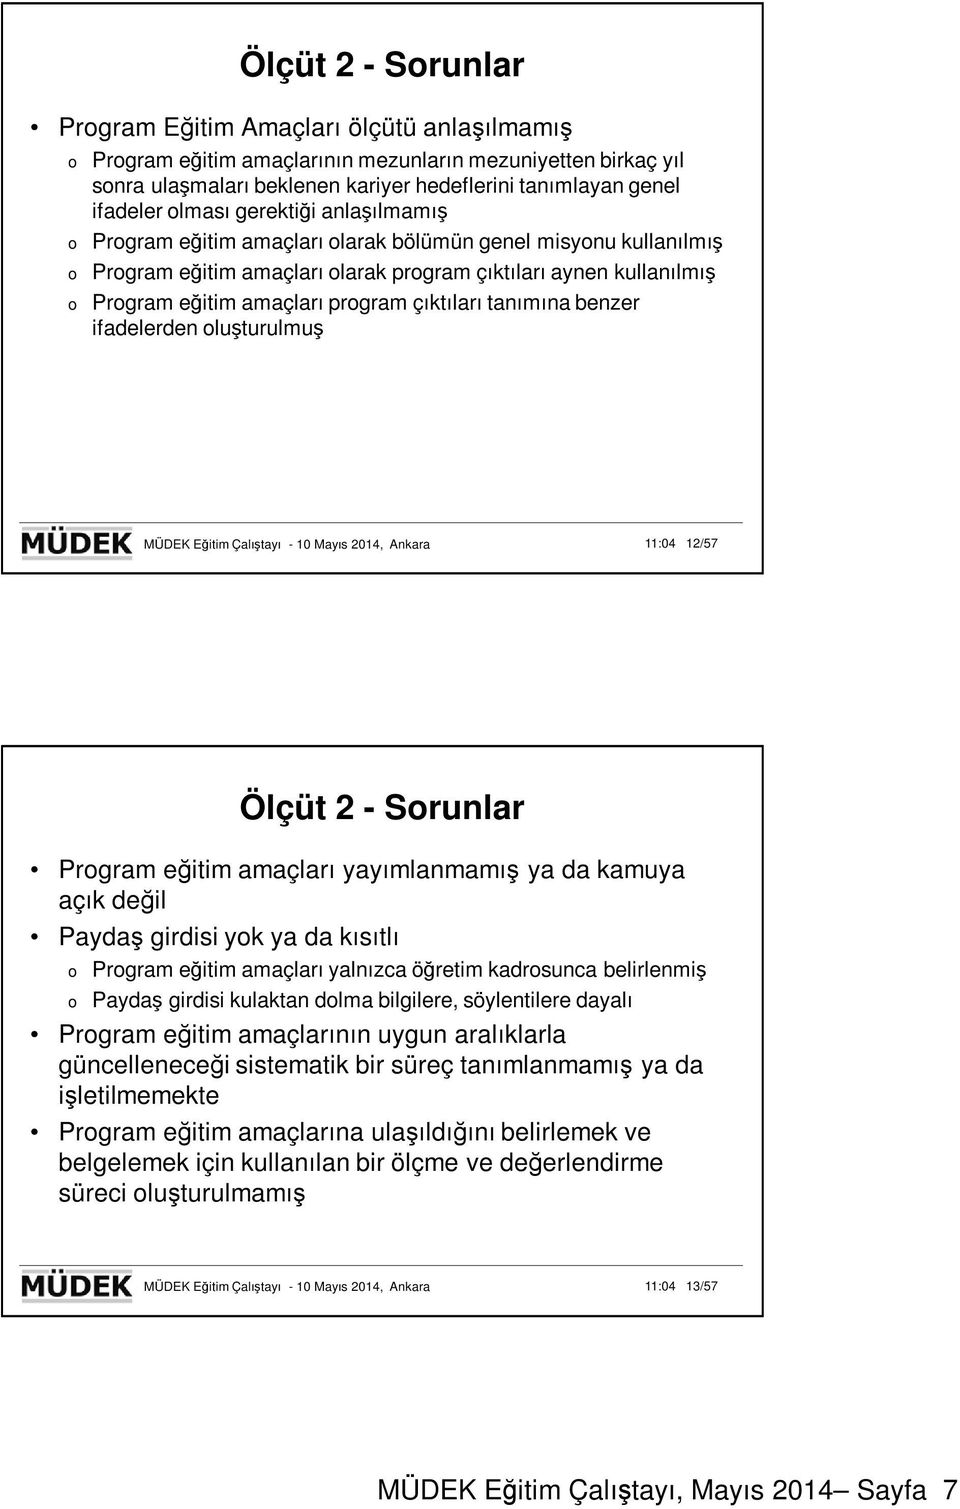 benzer ifadelerden luşturulmuş MÜDEK Eğitim Çalıştayı - 10 Mayıs 2014, Ankara 11:04 12/57 Ölçüt 2 - Srunlar Prgram eğitim amaçları yayımlanmamış ya da kamuya açık değil Paydaş girdisi yk ya da